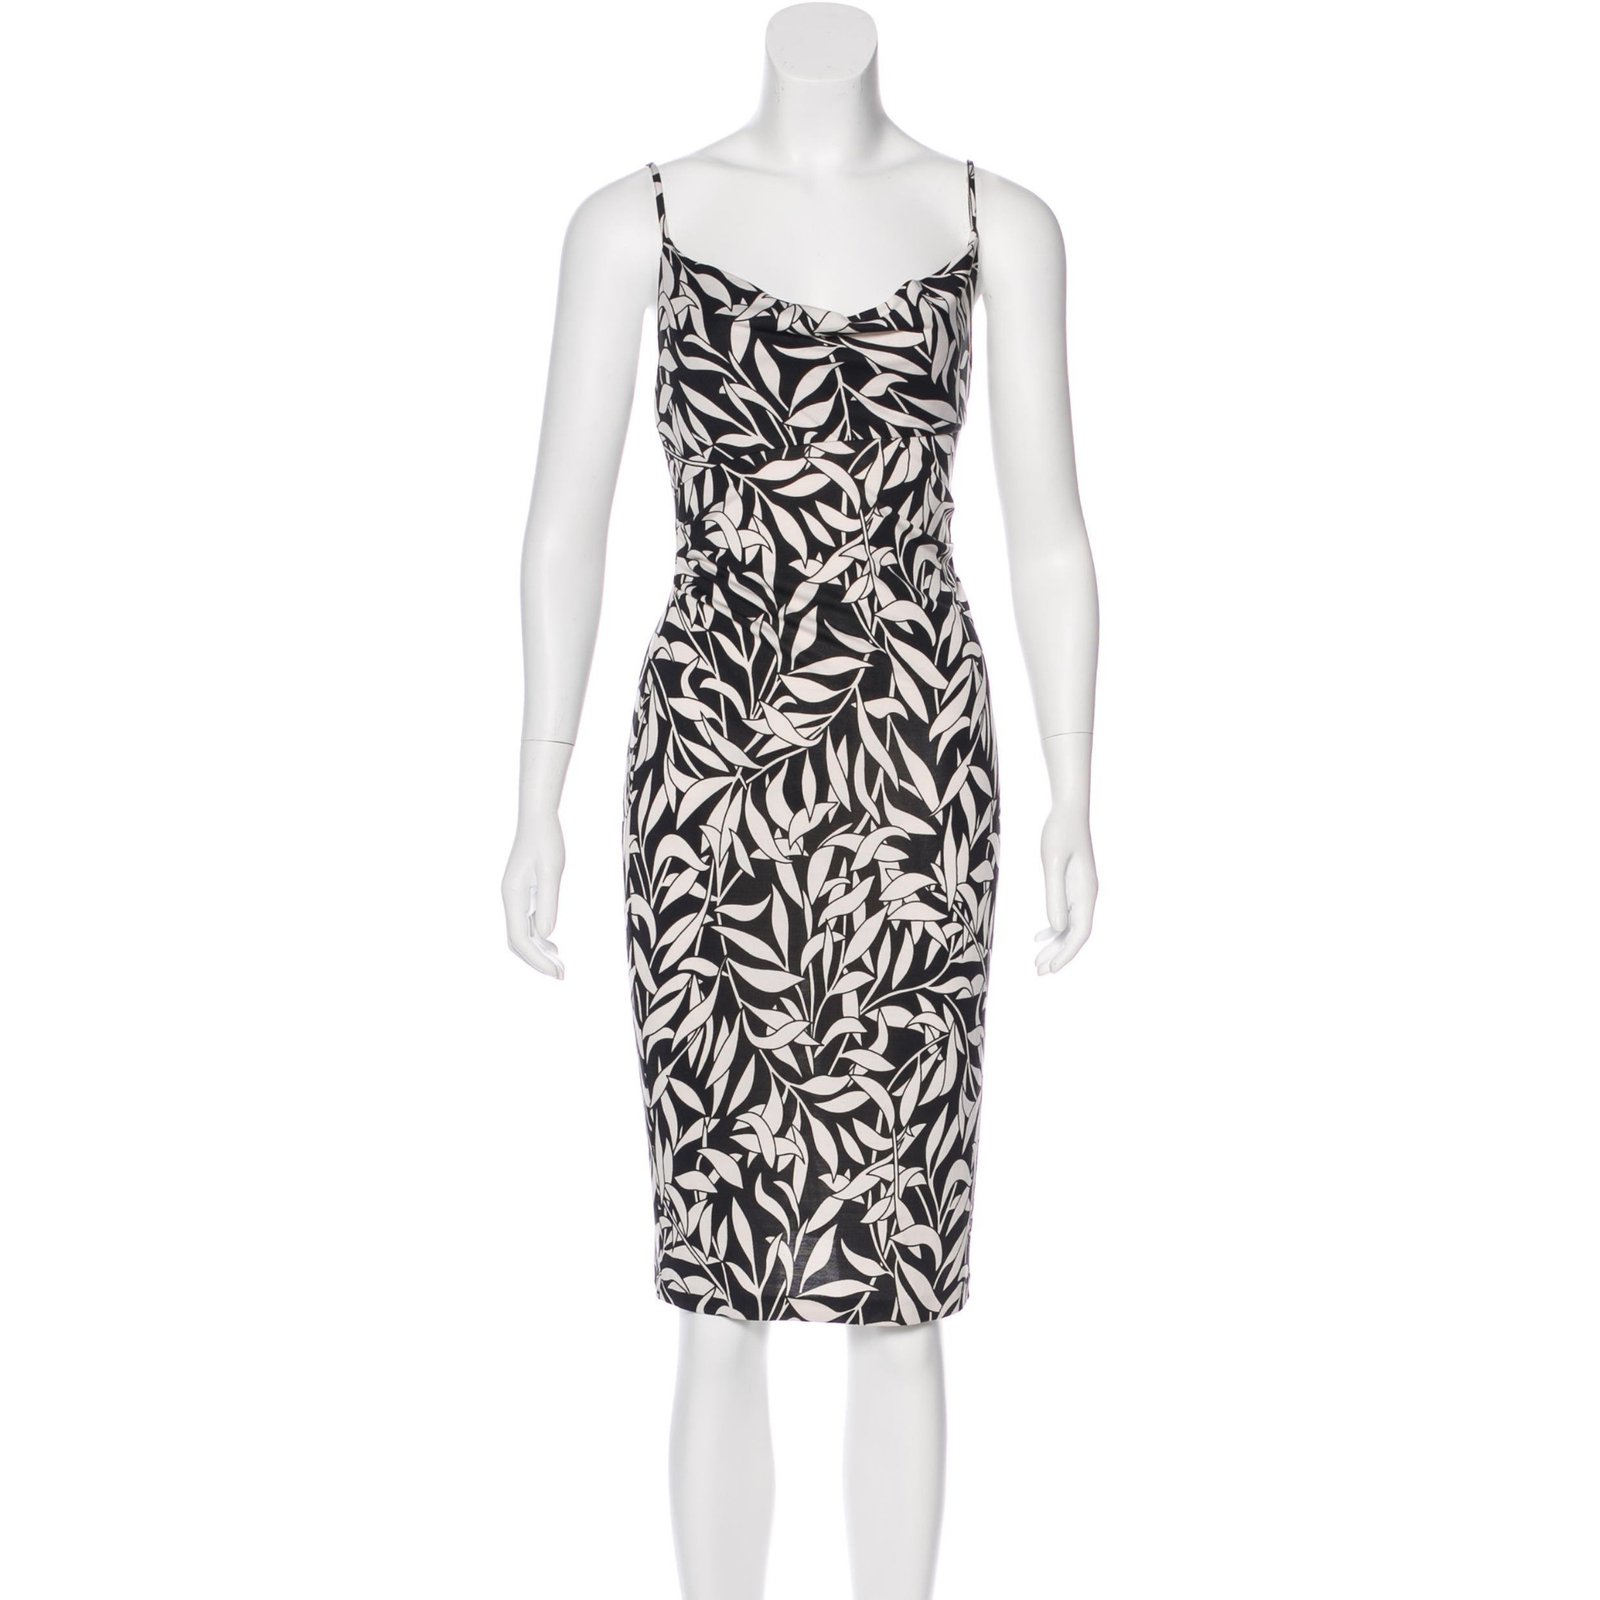 Diane Von Furstenberg Dress Online Shop, UP TO 69% OFF | www 